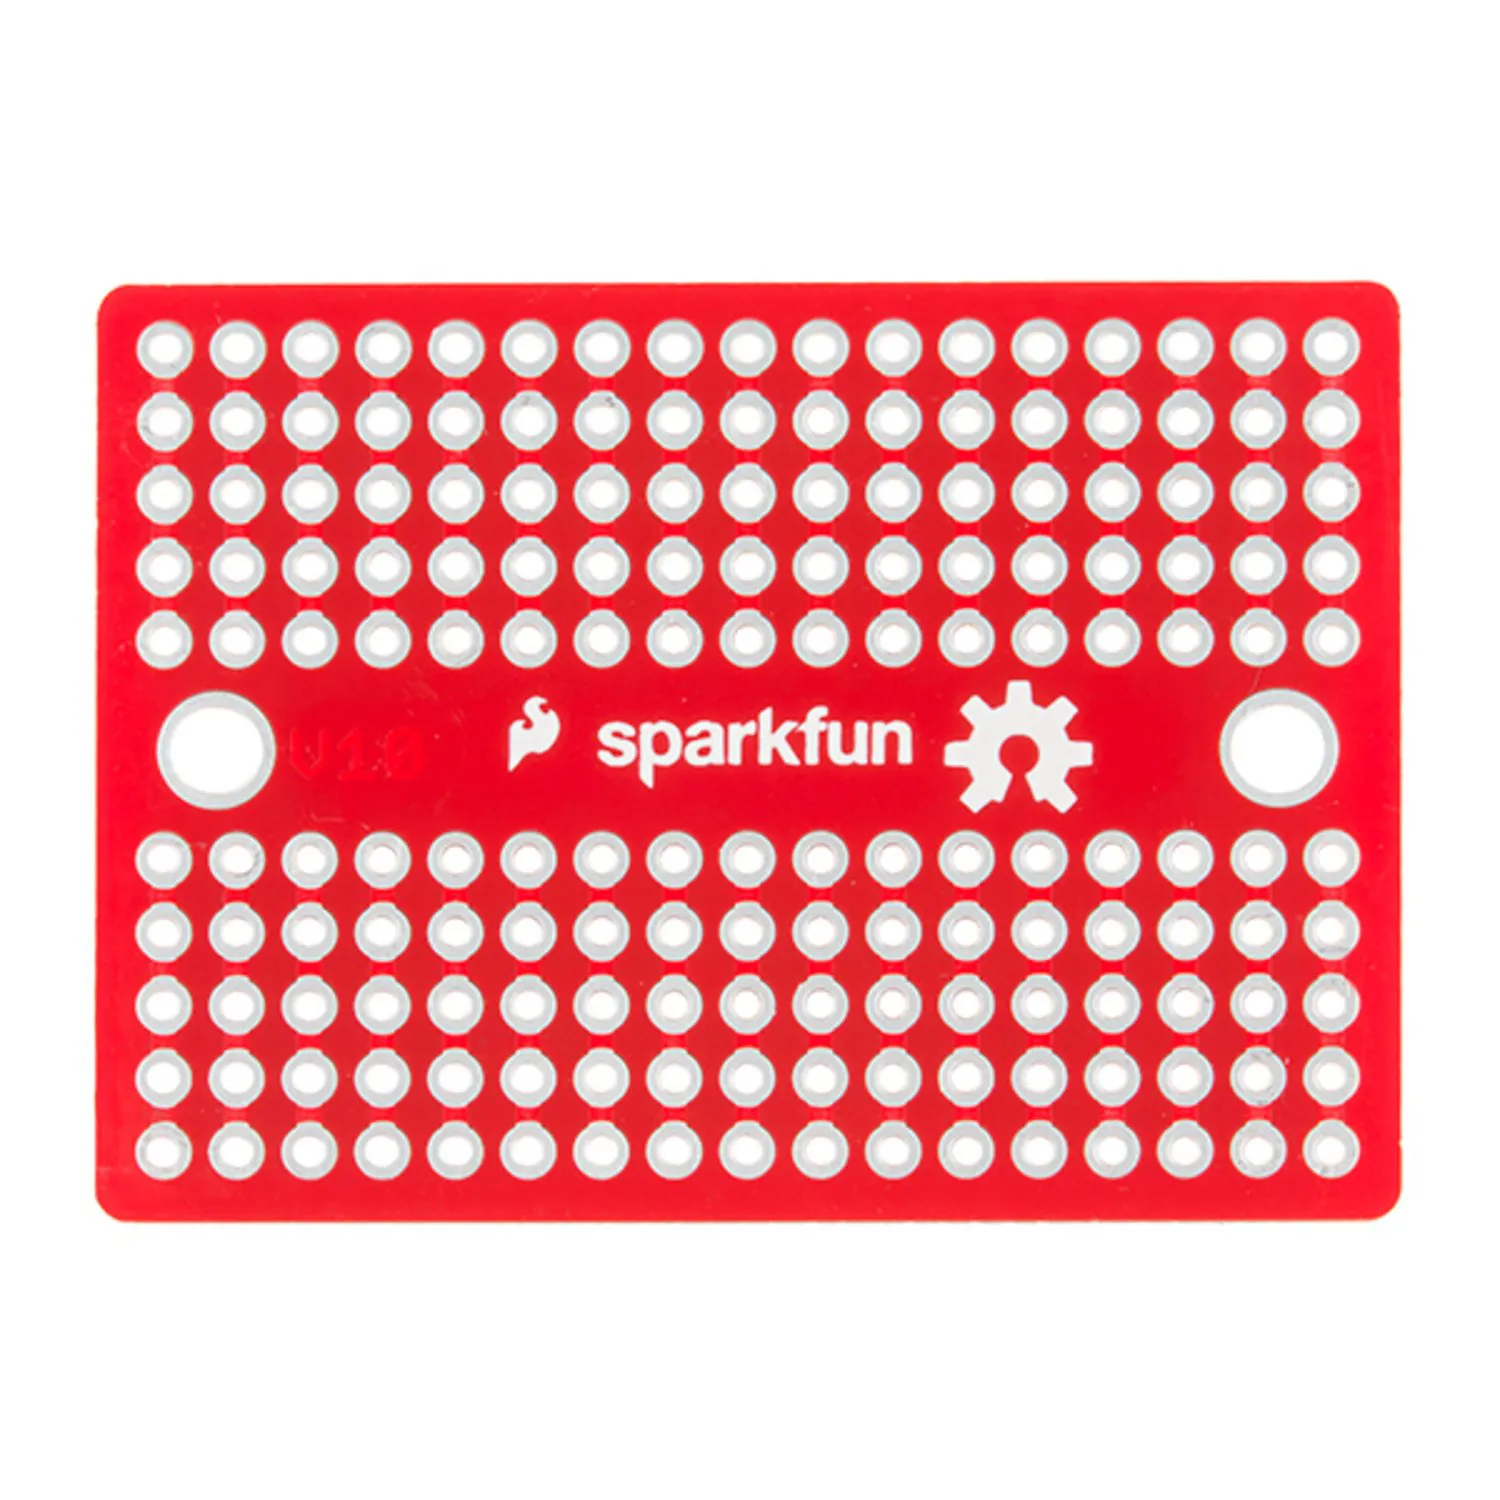 Photo of SparkFun Solder-able Breadboard - Mini